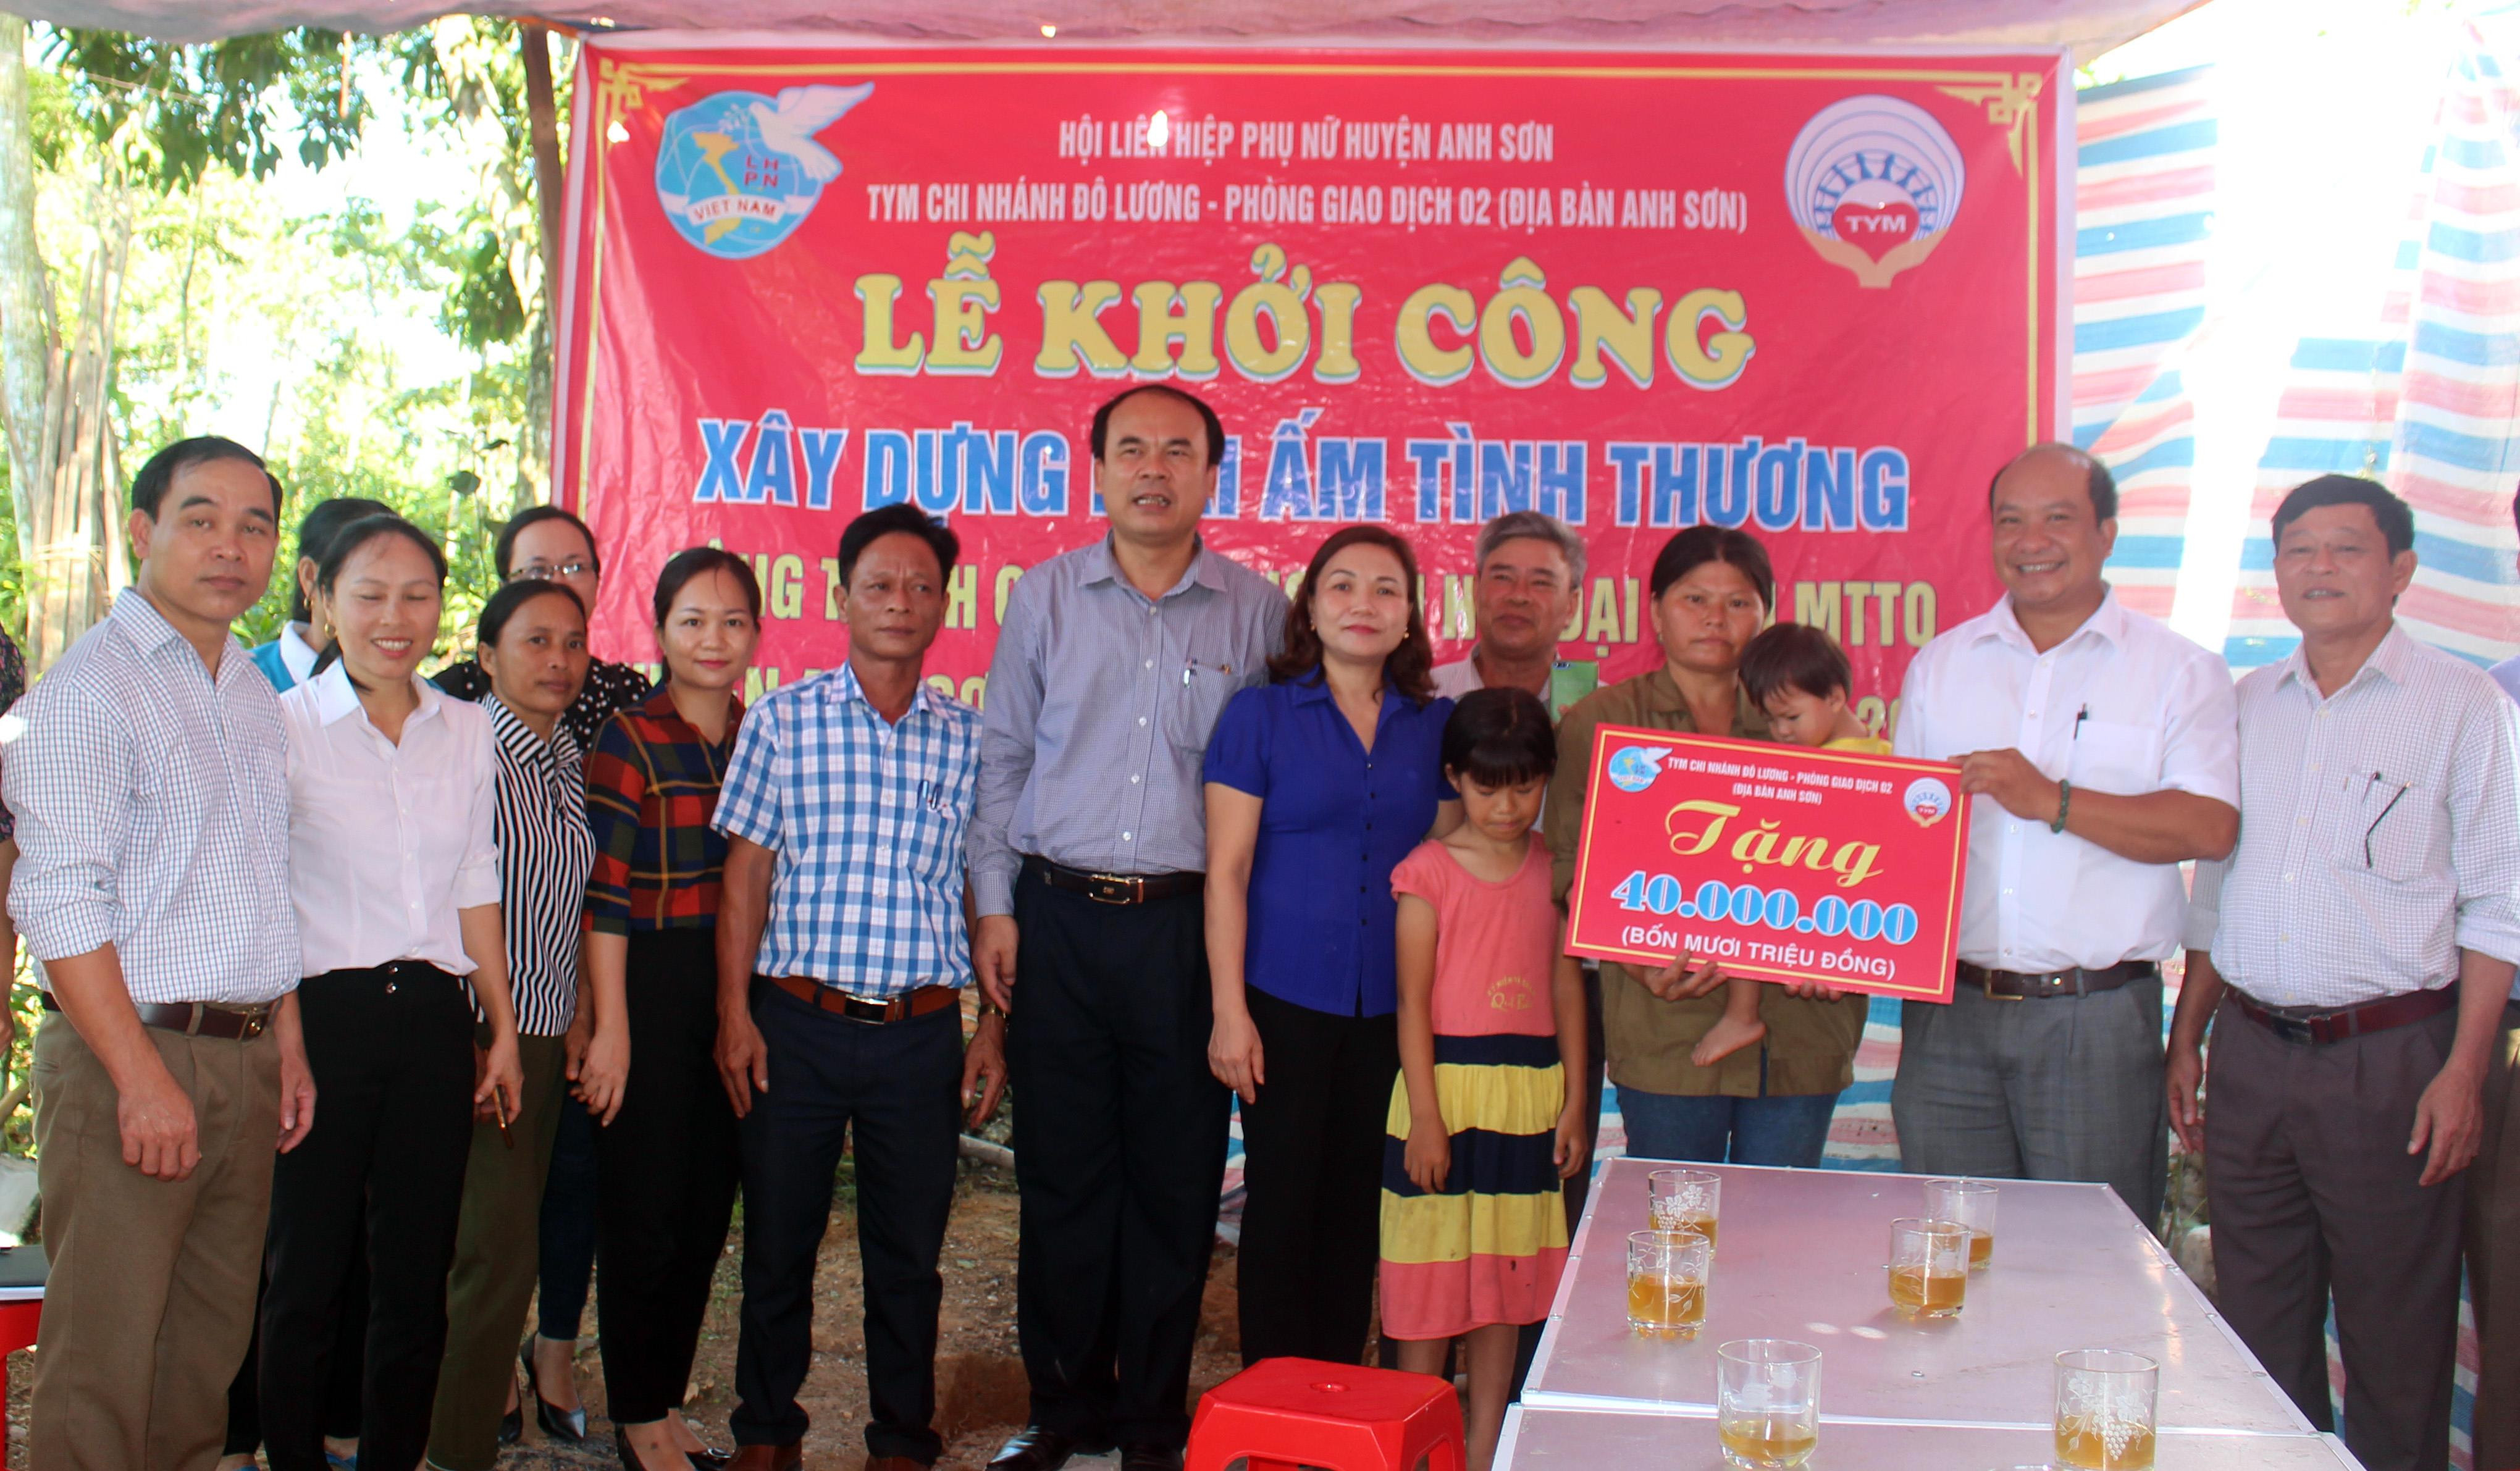 Hội LHPN huyện, phối hợp với quỹ TYM chi nhánh Đô Lương, phòng giao dịch số 02 chi nhánh Anh Sơn hỗ trợ xây dựng nhà mái ấm tình thương cho chị Hà Thị Xuân